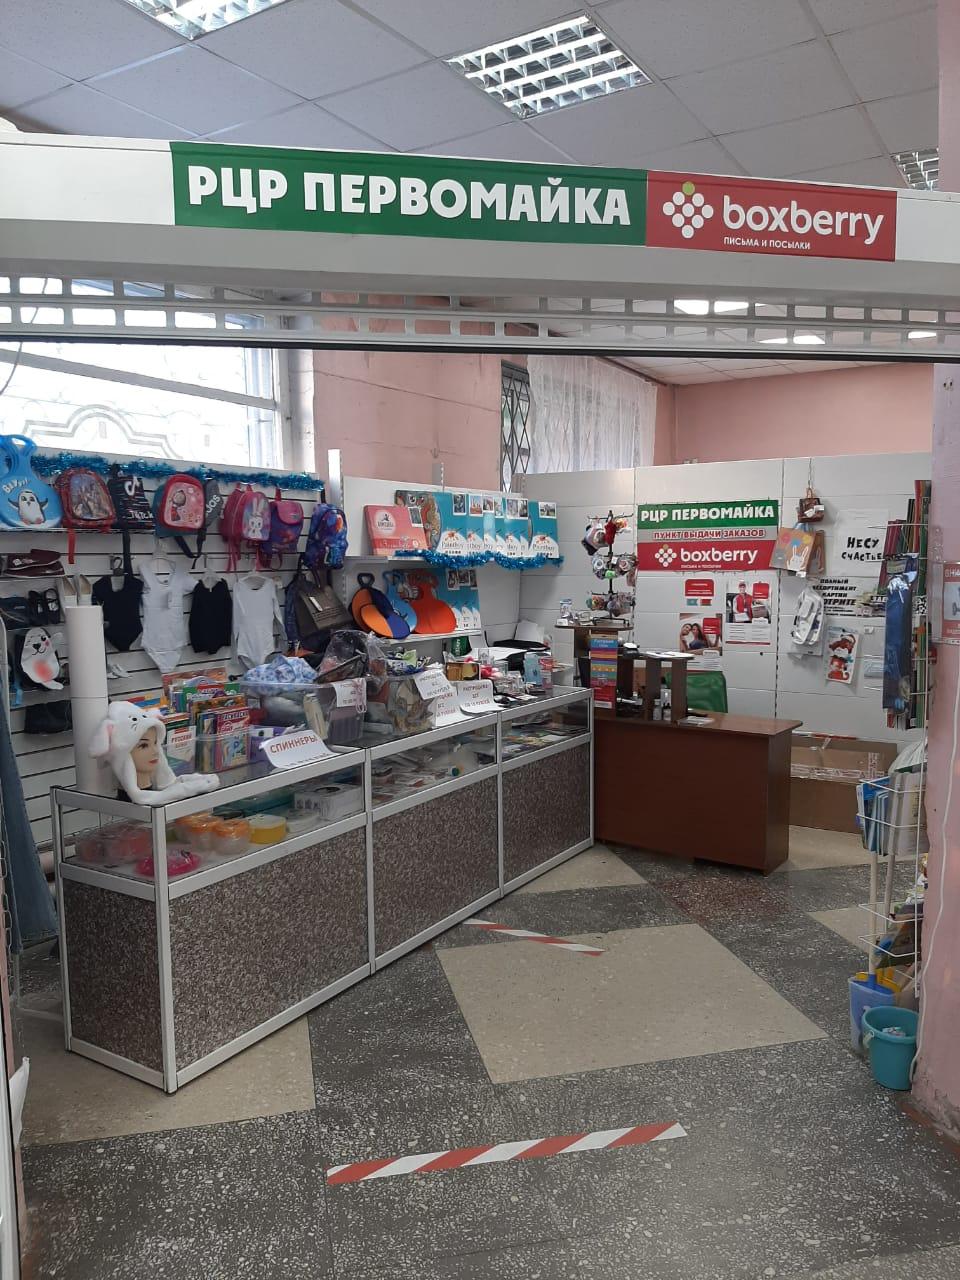 Интернет Магазин Е2е4 В Новосибирске